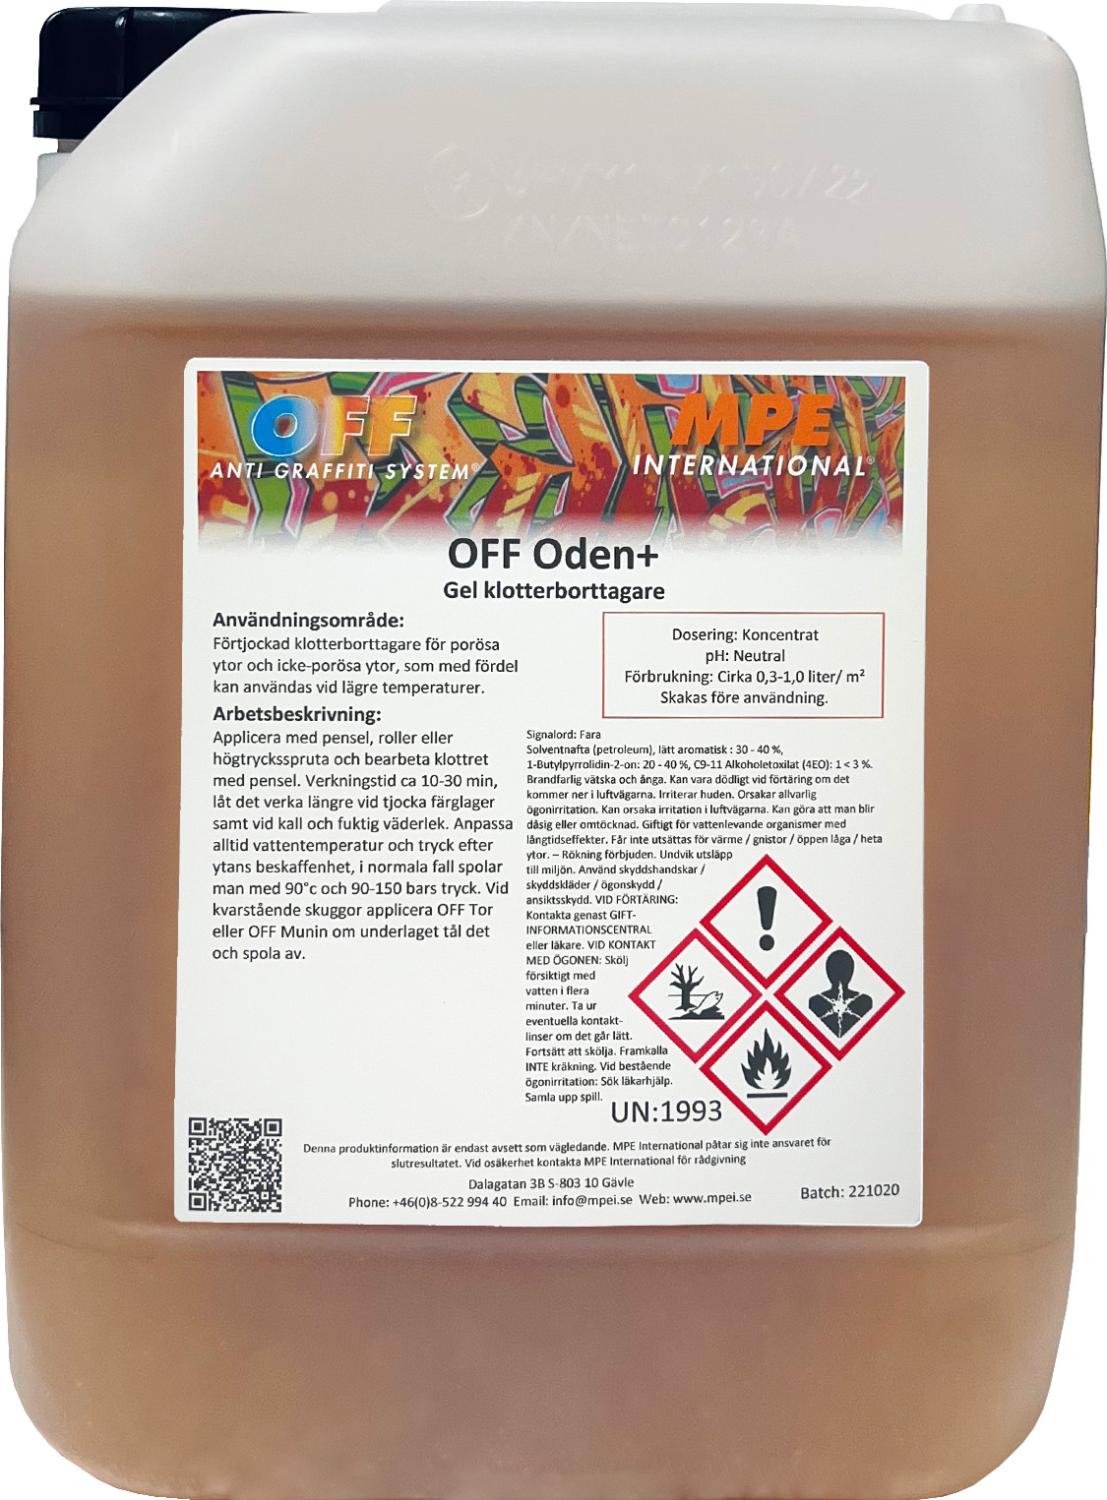 OFF Oden+, Graffiti remover